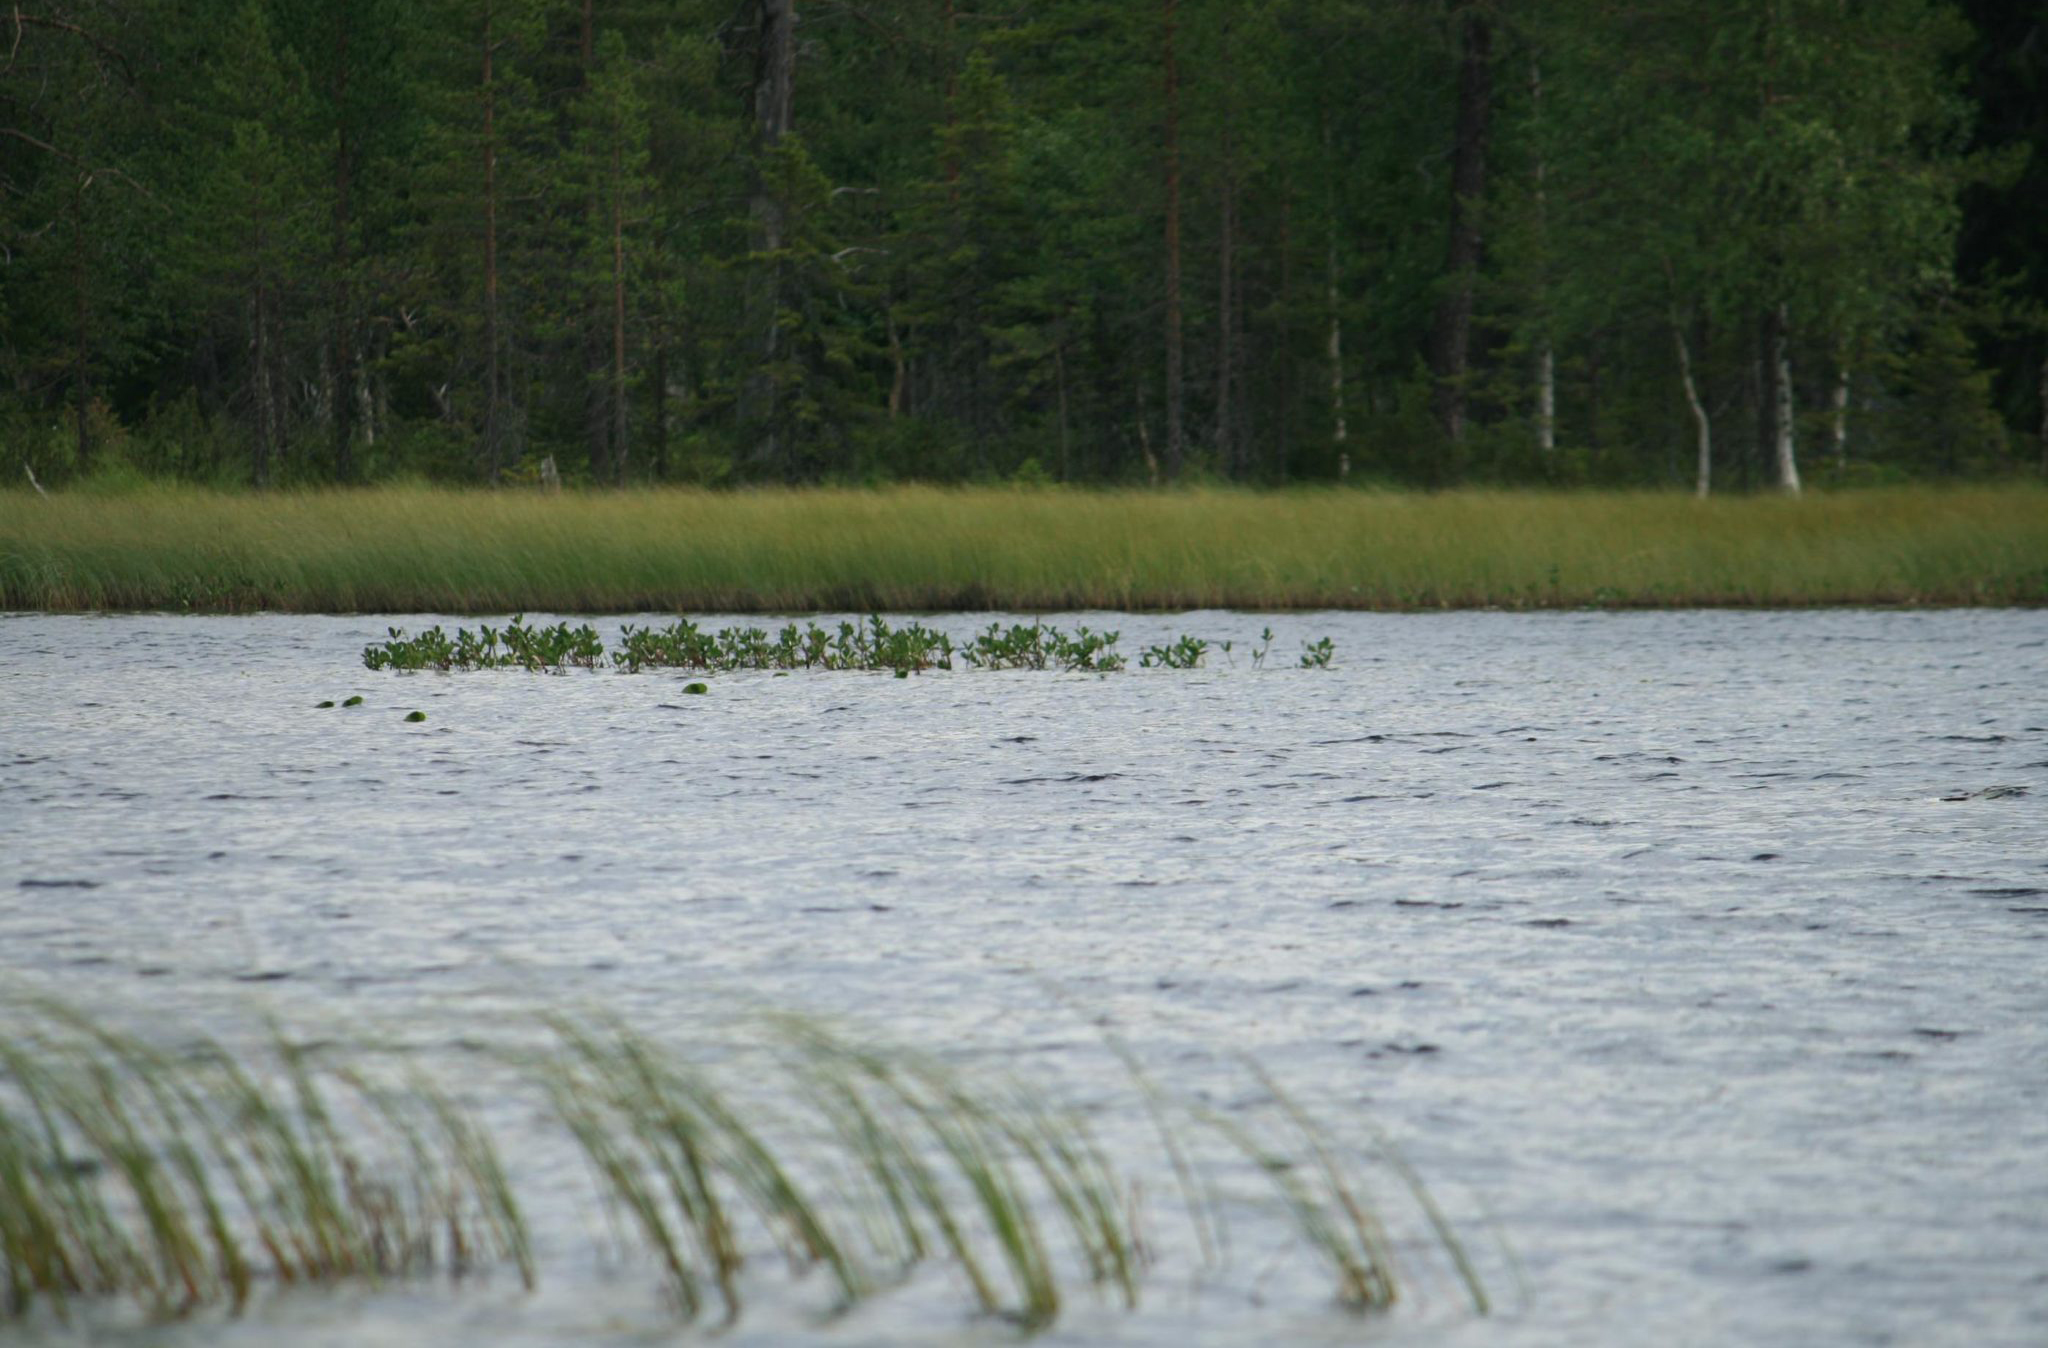 Stroken riet en waterplanten in meertje in Finland met bos op de achtergrond